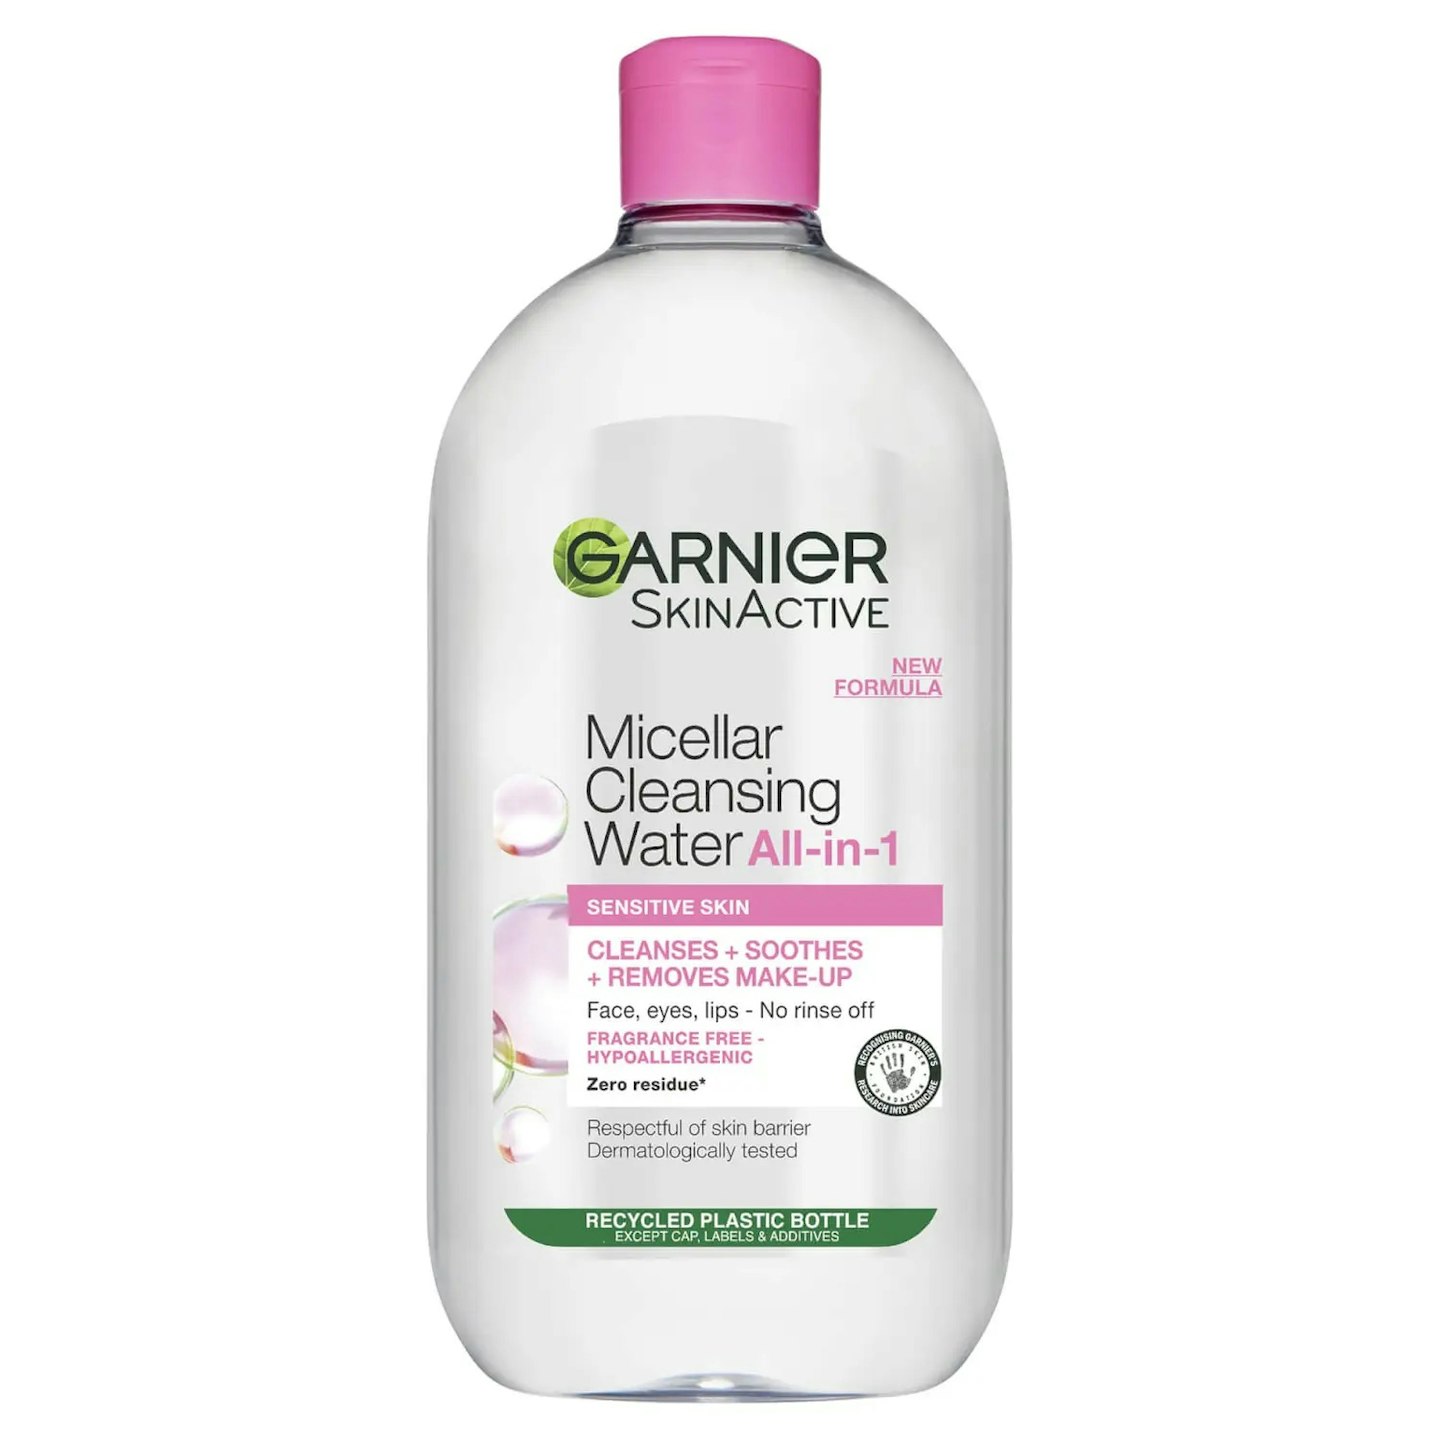 Garnier Micellar Cleansing Water 